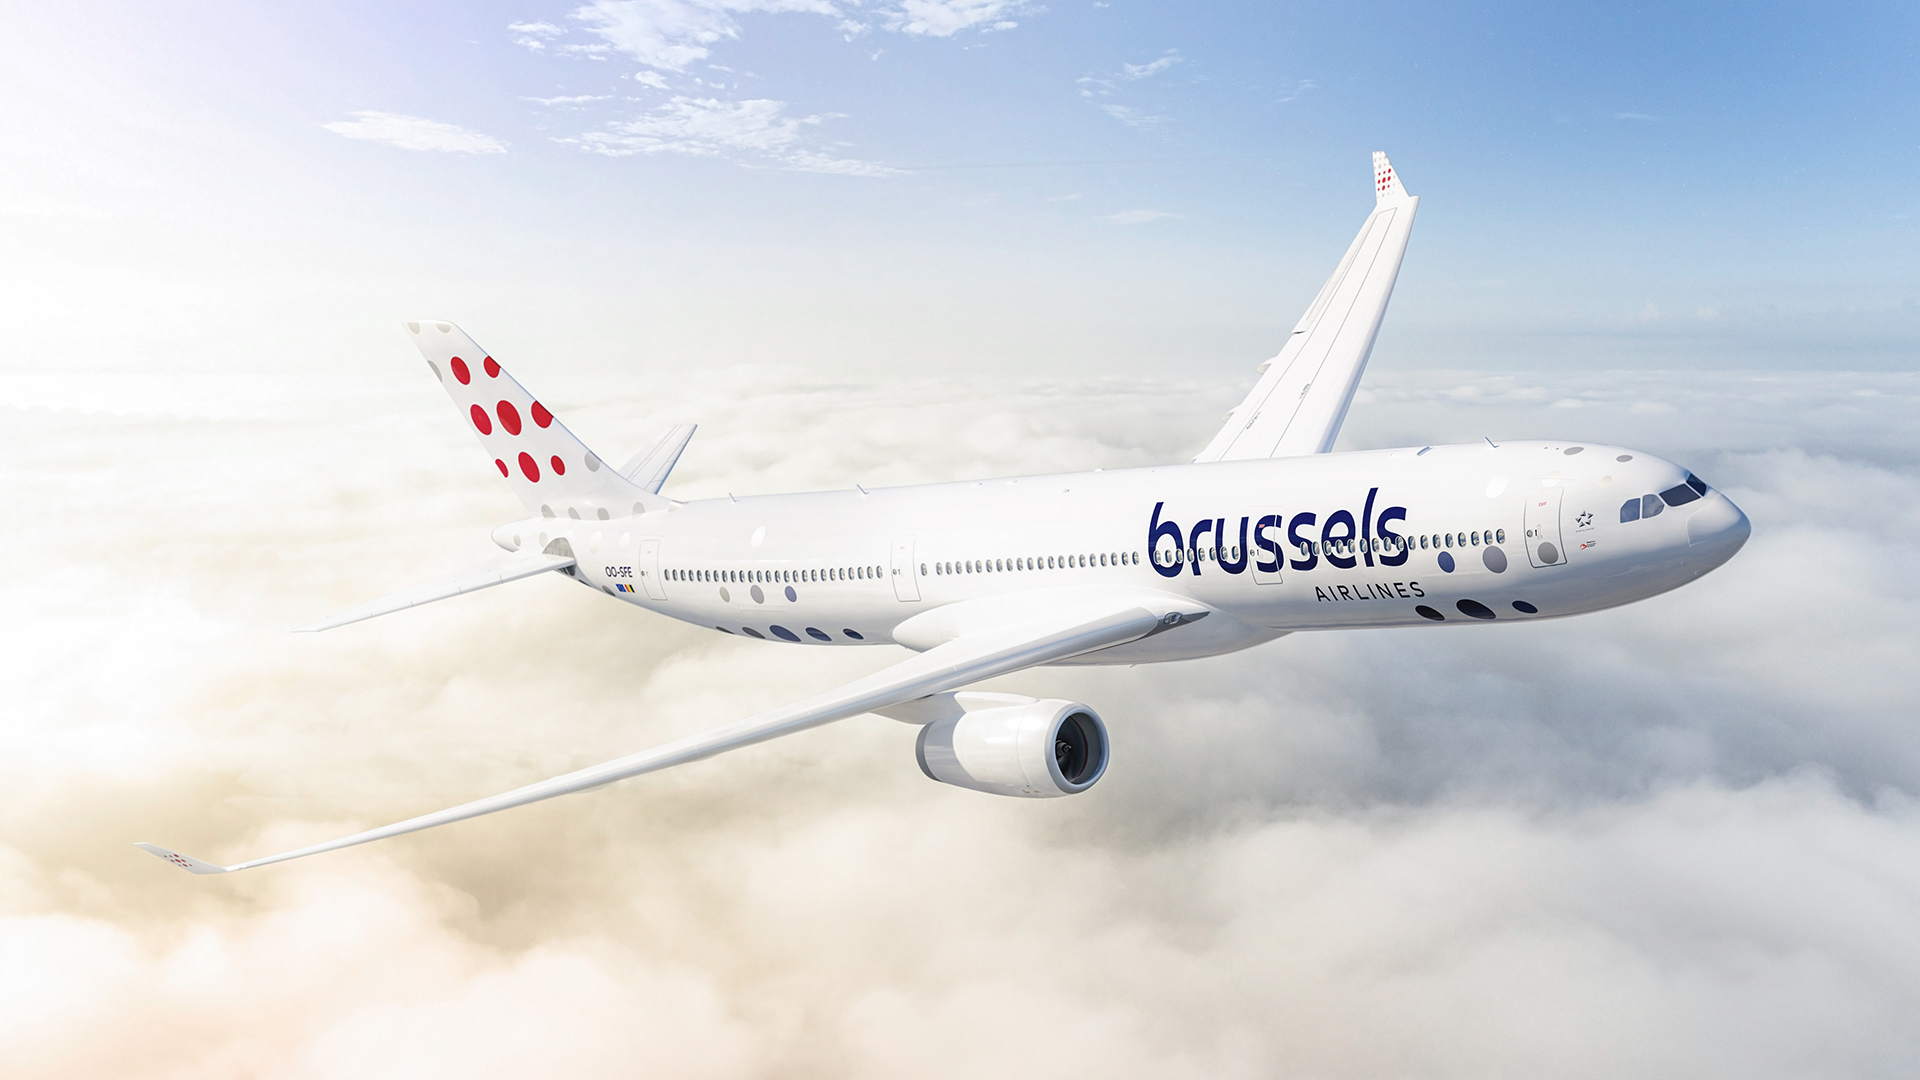 Brussels Airlines maintient son attention sur le continent africain et confirme sa position sur le marché avec une nouvelle identité de marque